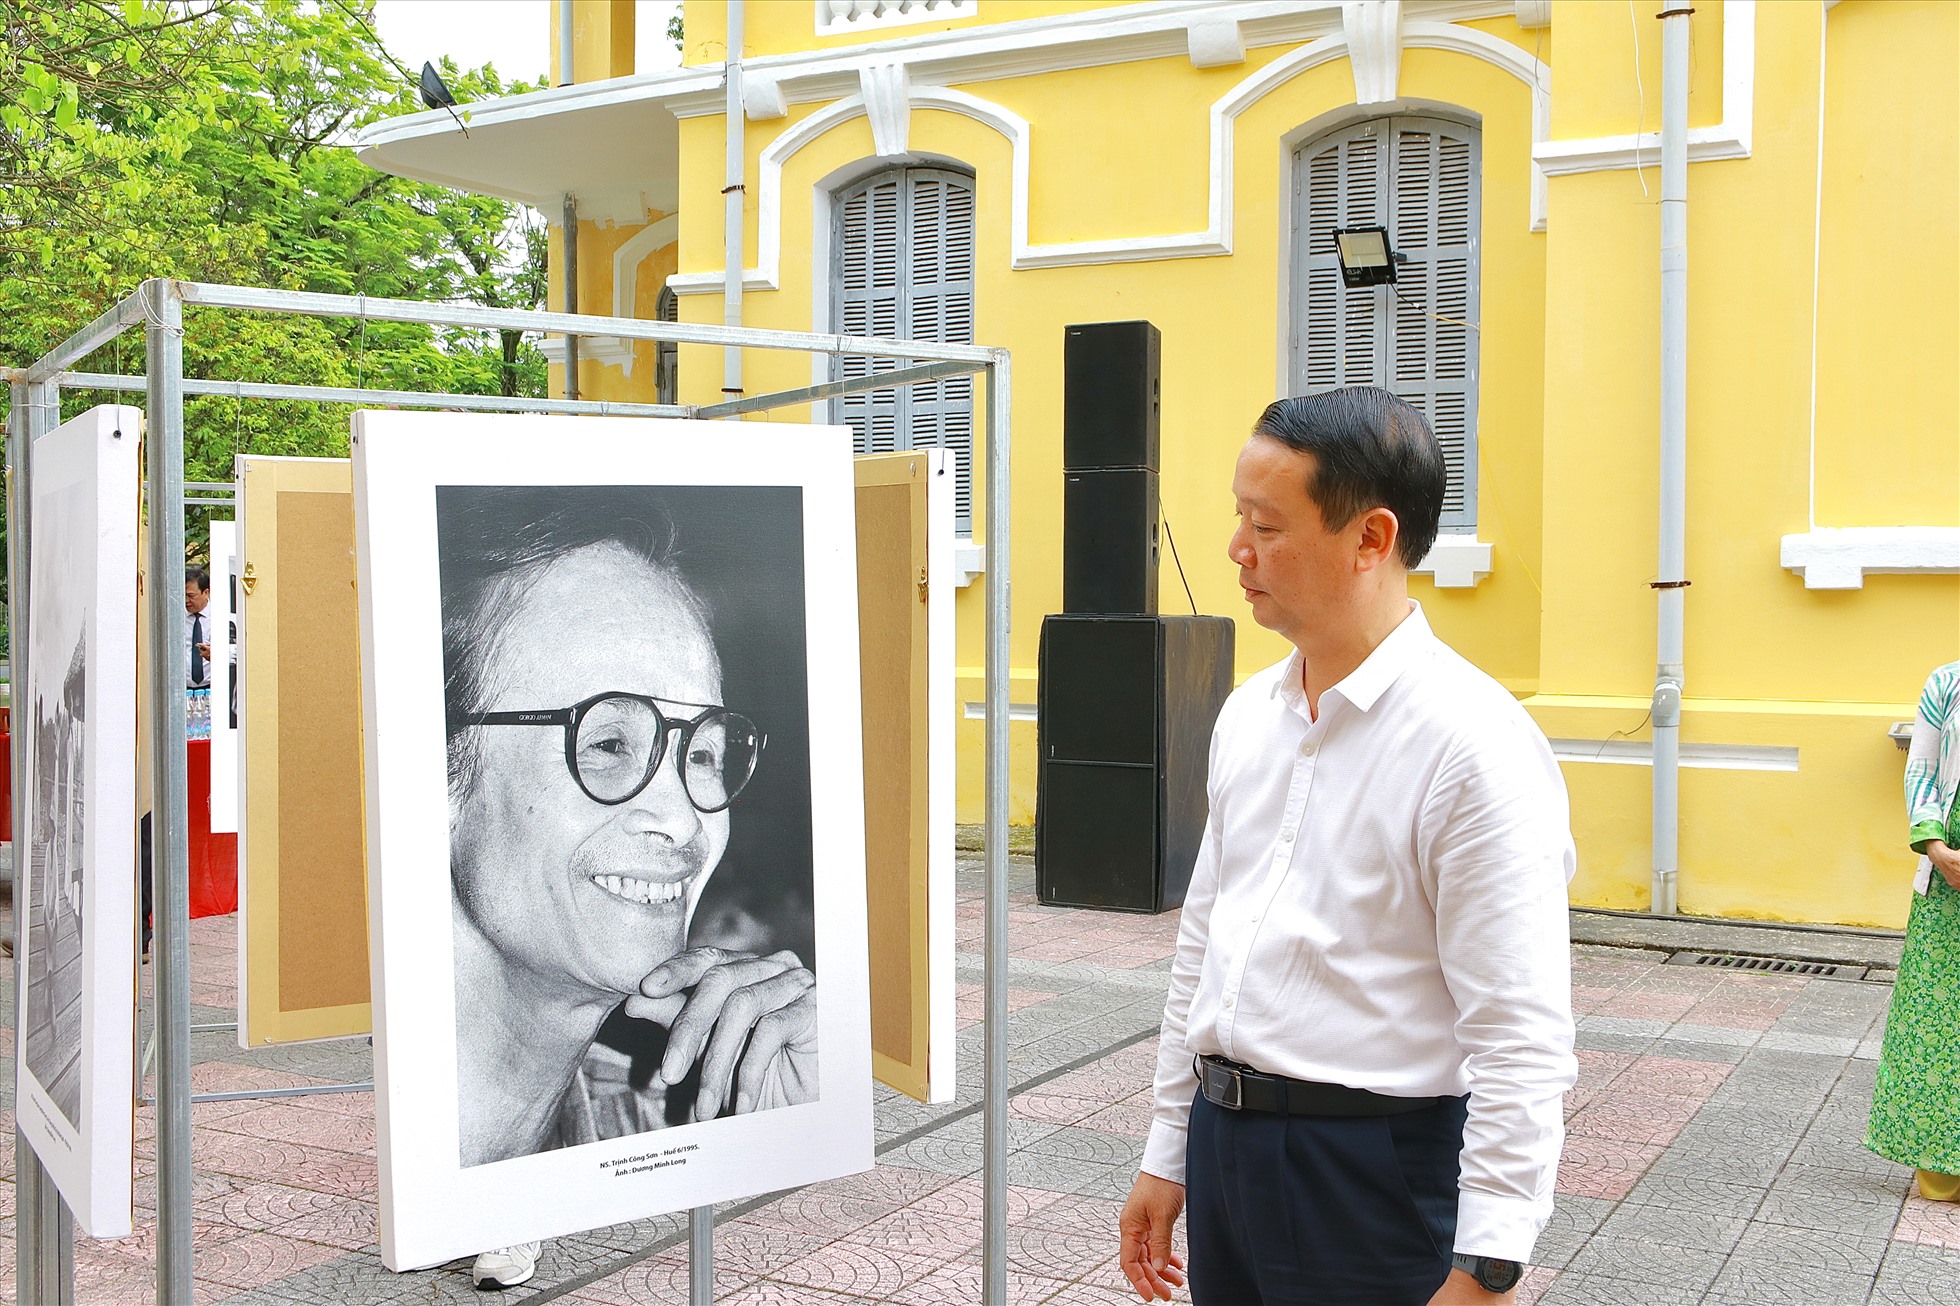 Ông Phan Thiên Định - Bí thư Thành ủy Huế chiêm ngưỡng chân dung của cố nhạc sĩ Trịnh Công Sơn qua bức hình đen trắng được chụp tại Huế vào tháng 6 năm 1995.